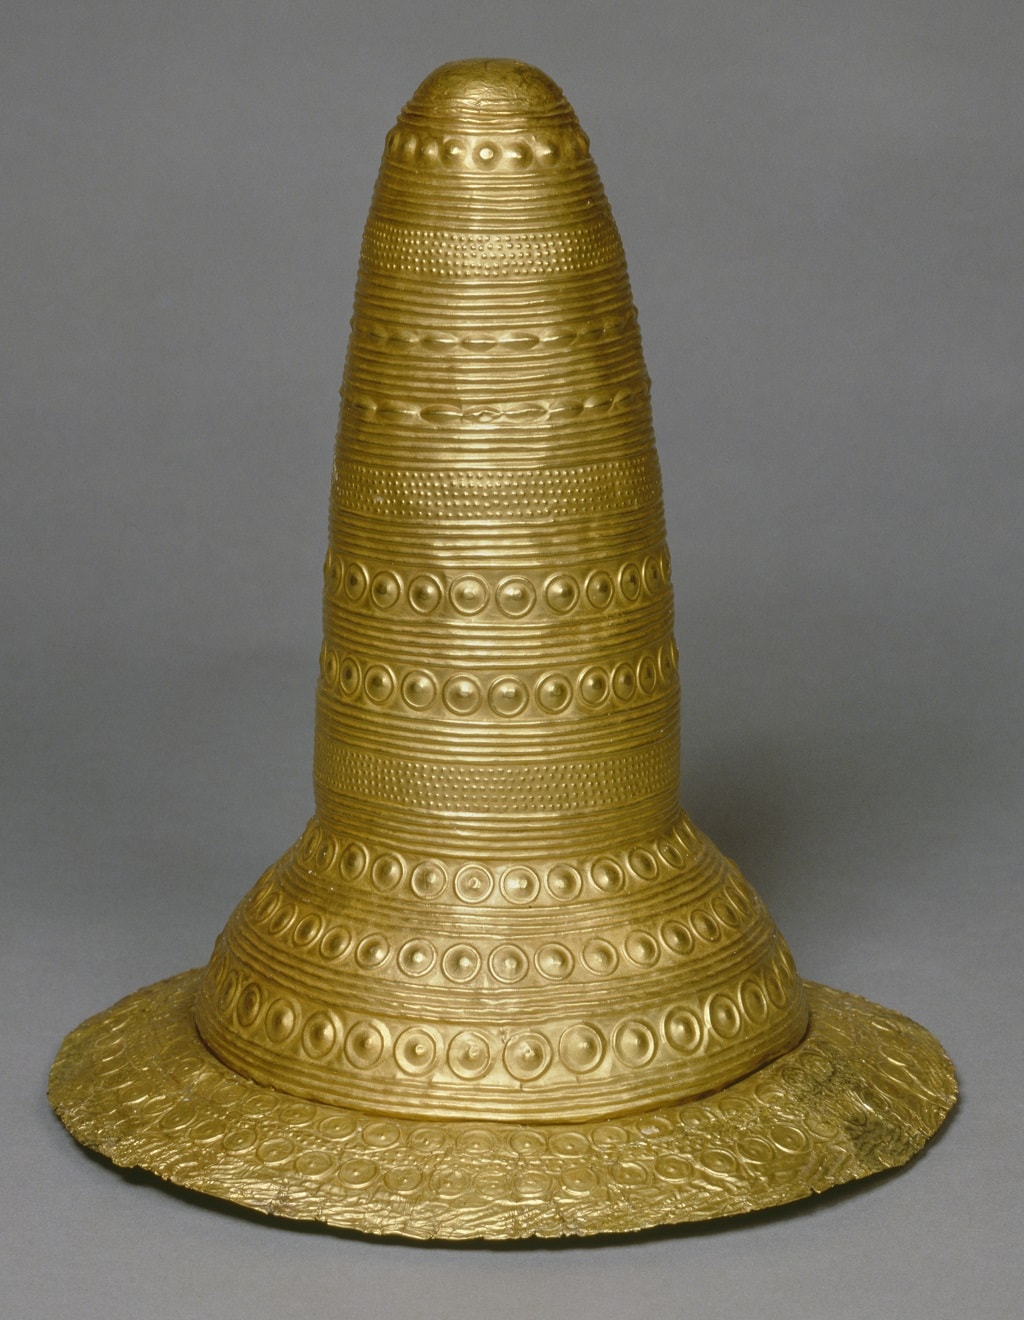 The Schifferstadt gold hat, c. 1600 BC, which was found with three bronze axes Rhineland-Palatinate, Germany. Historisches Museum der Pfalz Speyer